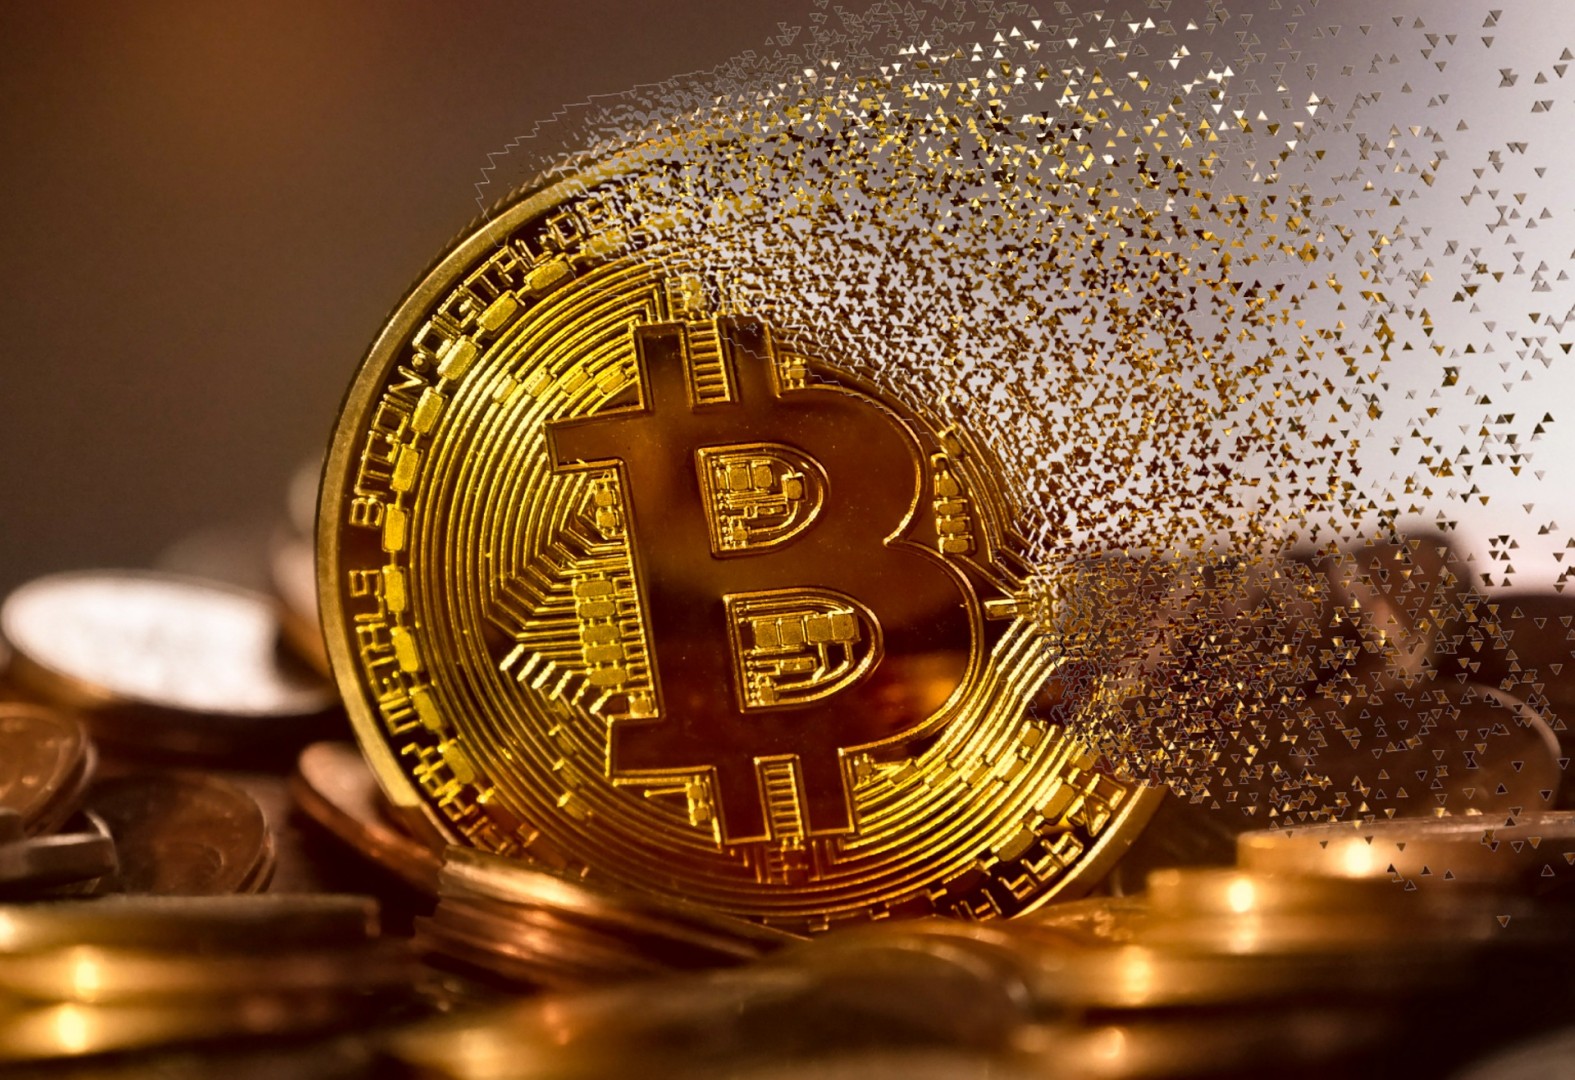  Kurs Bitcoina (najbardziej znanej i najcenniejszej cyfrowej waluty) spadł o około 2%